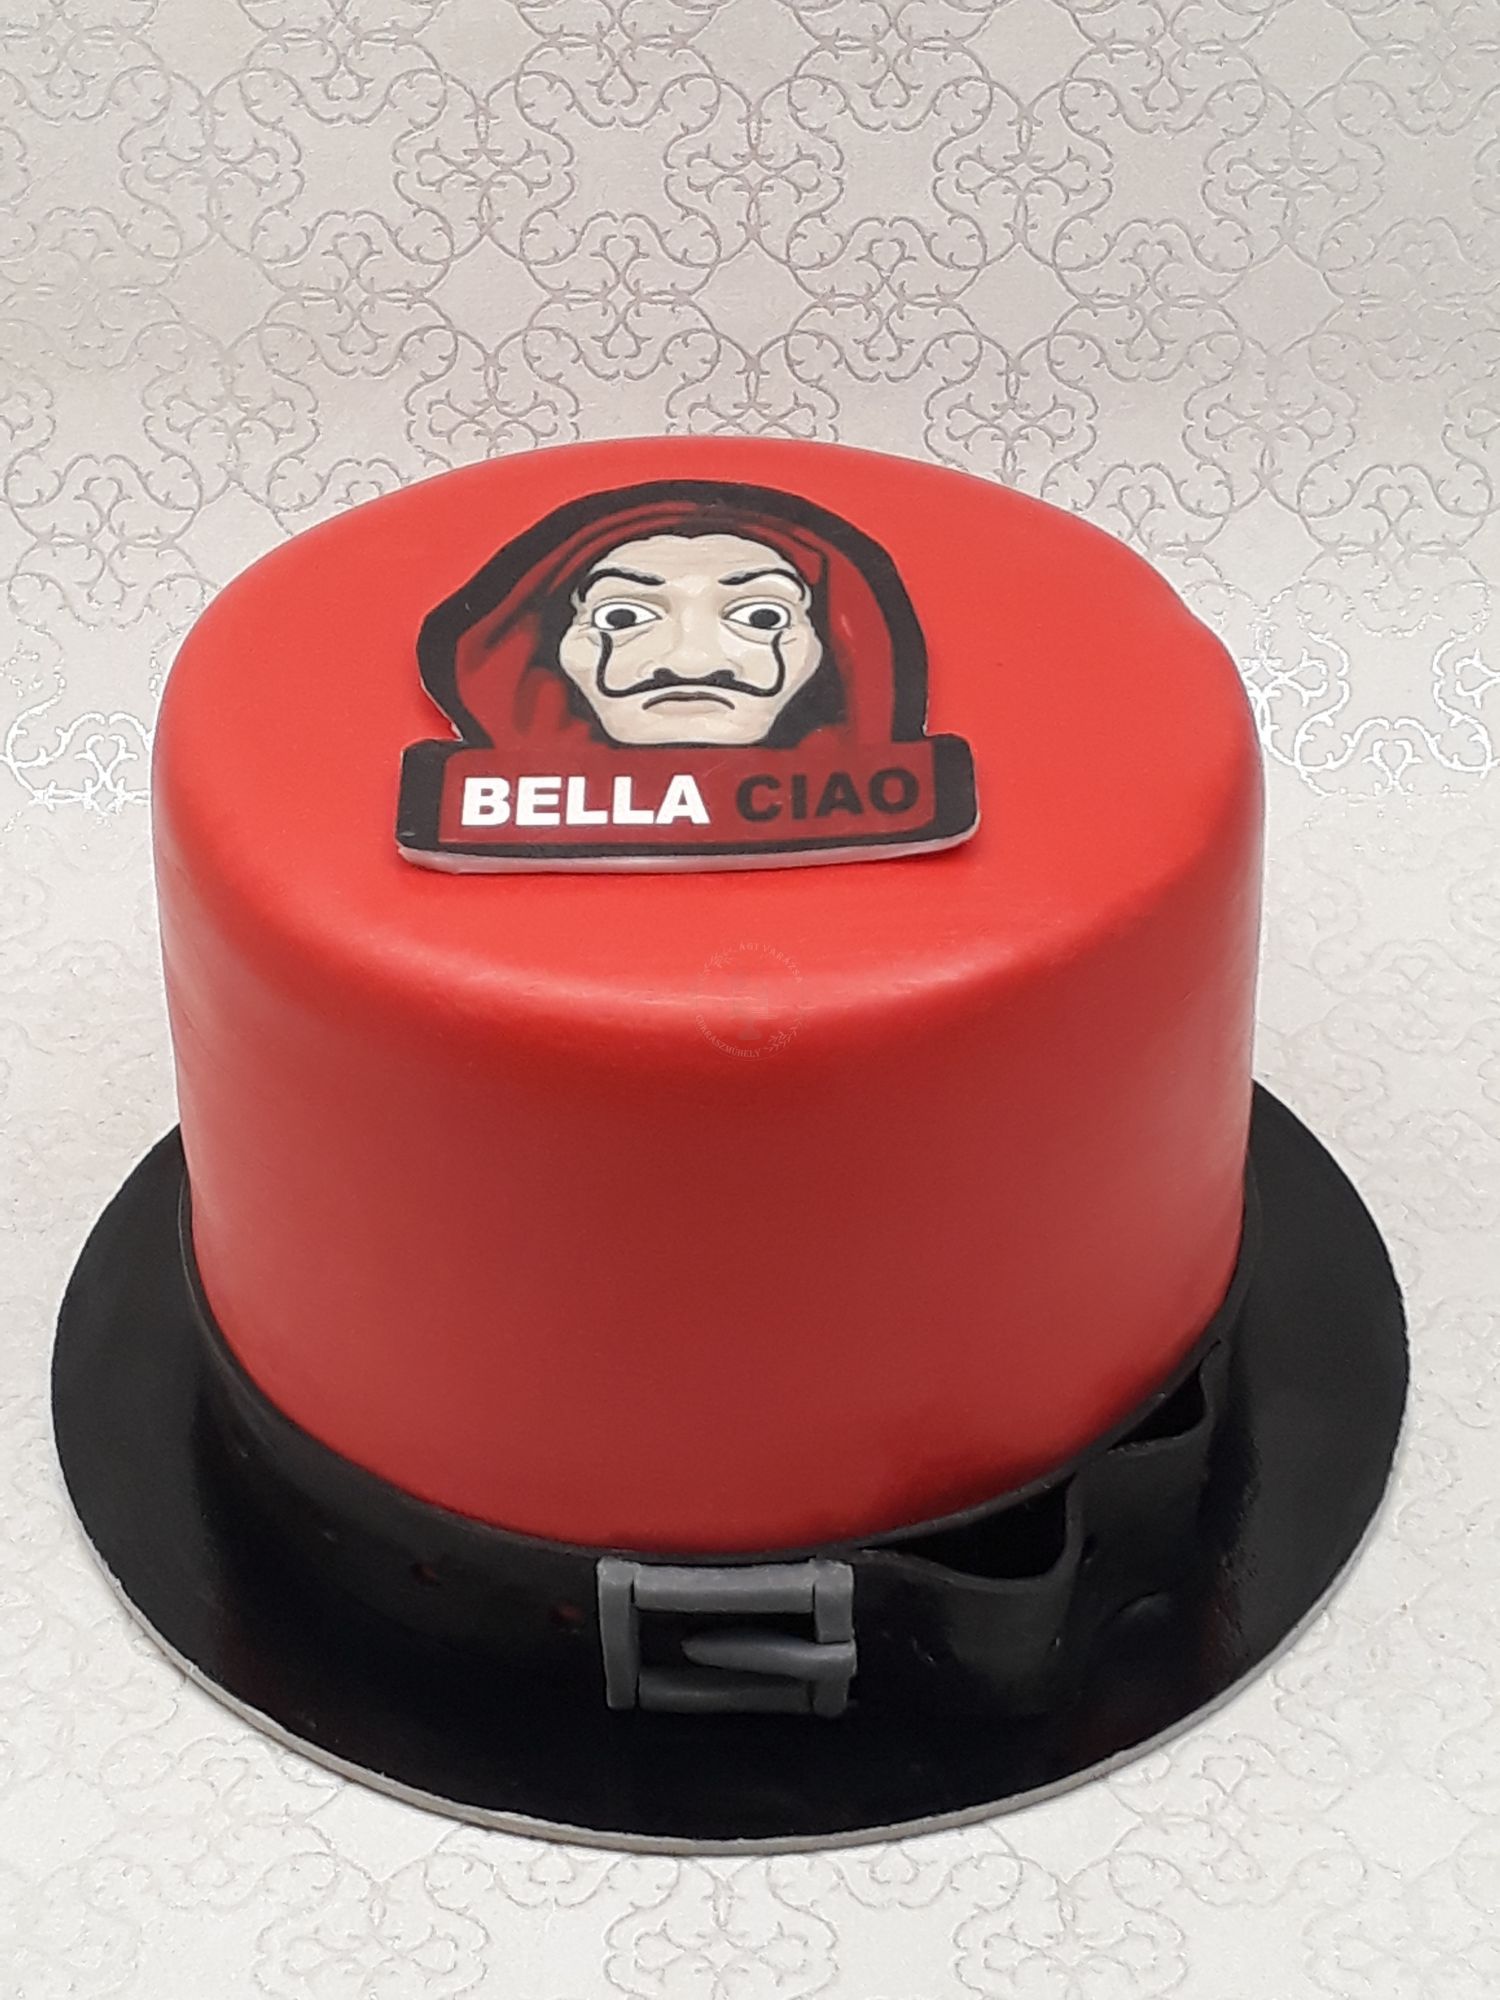 Bella ciao torta